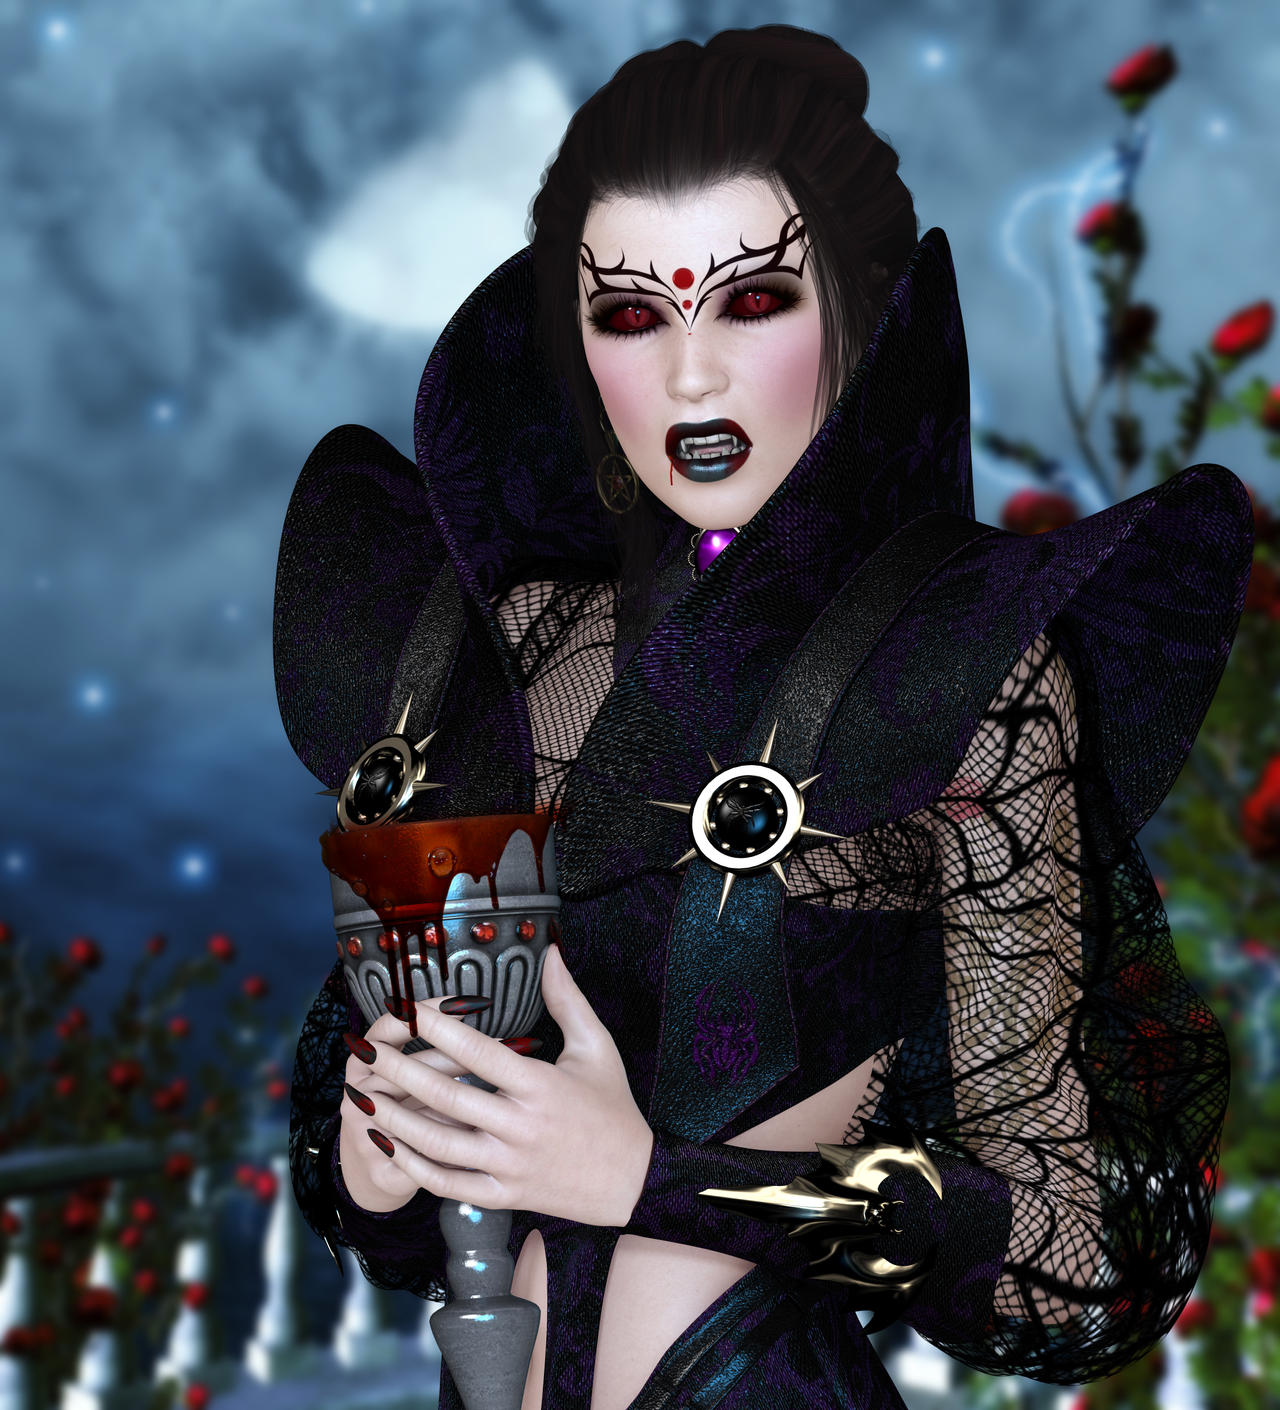 The Vampire Queen by Kaleya on DeviantArt